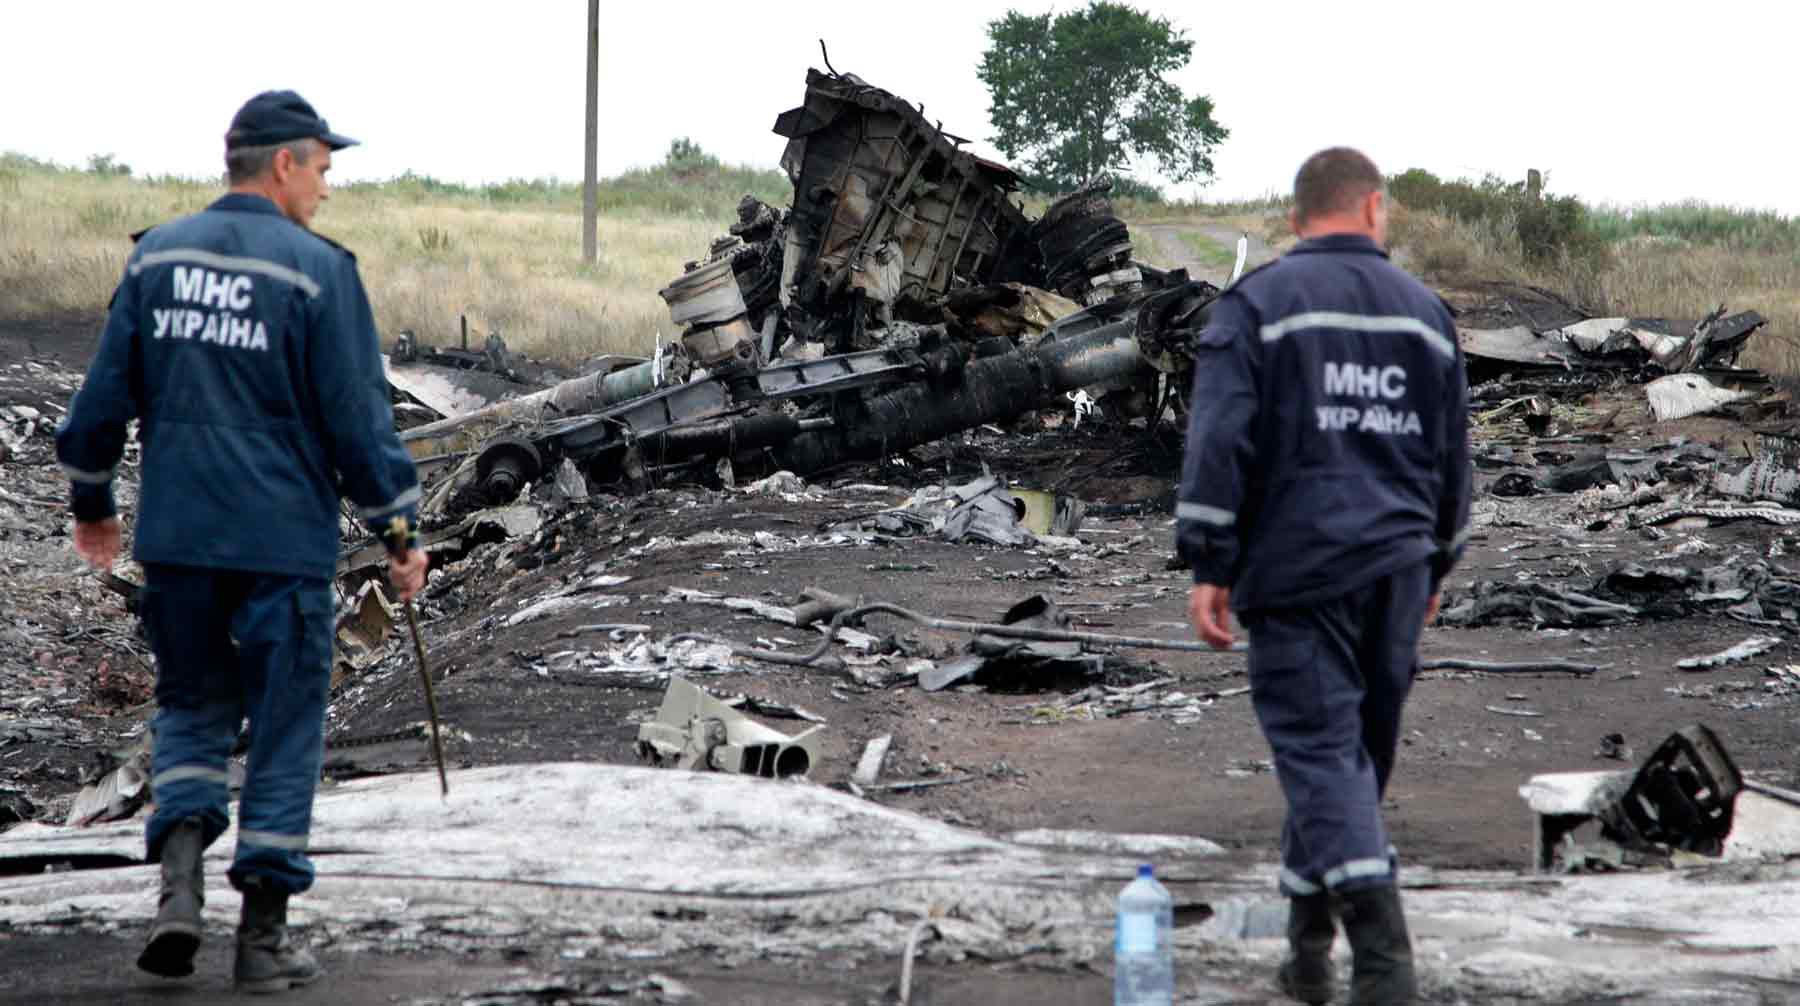 Dailystorm - В Гааге впервые представили показания обвиняемого по делу MH17